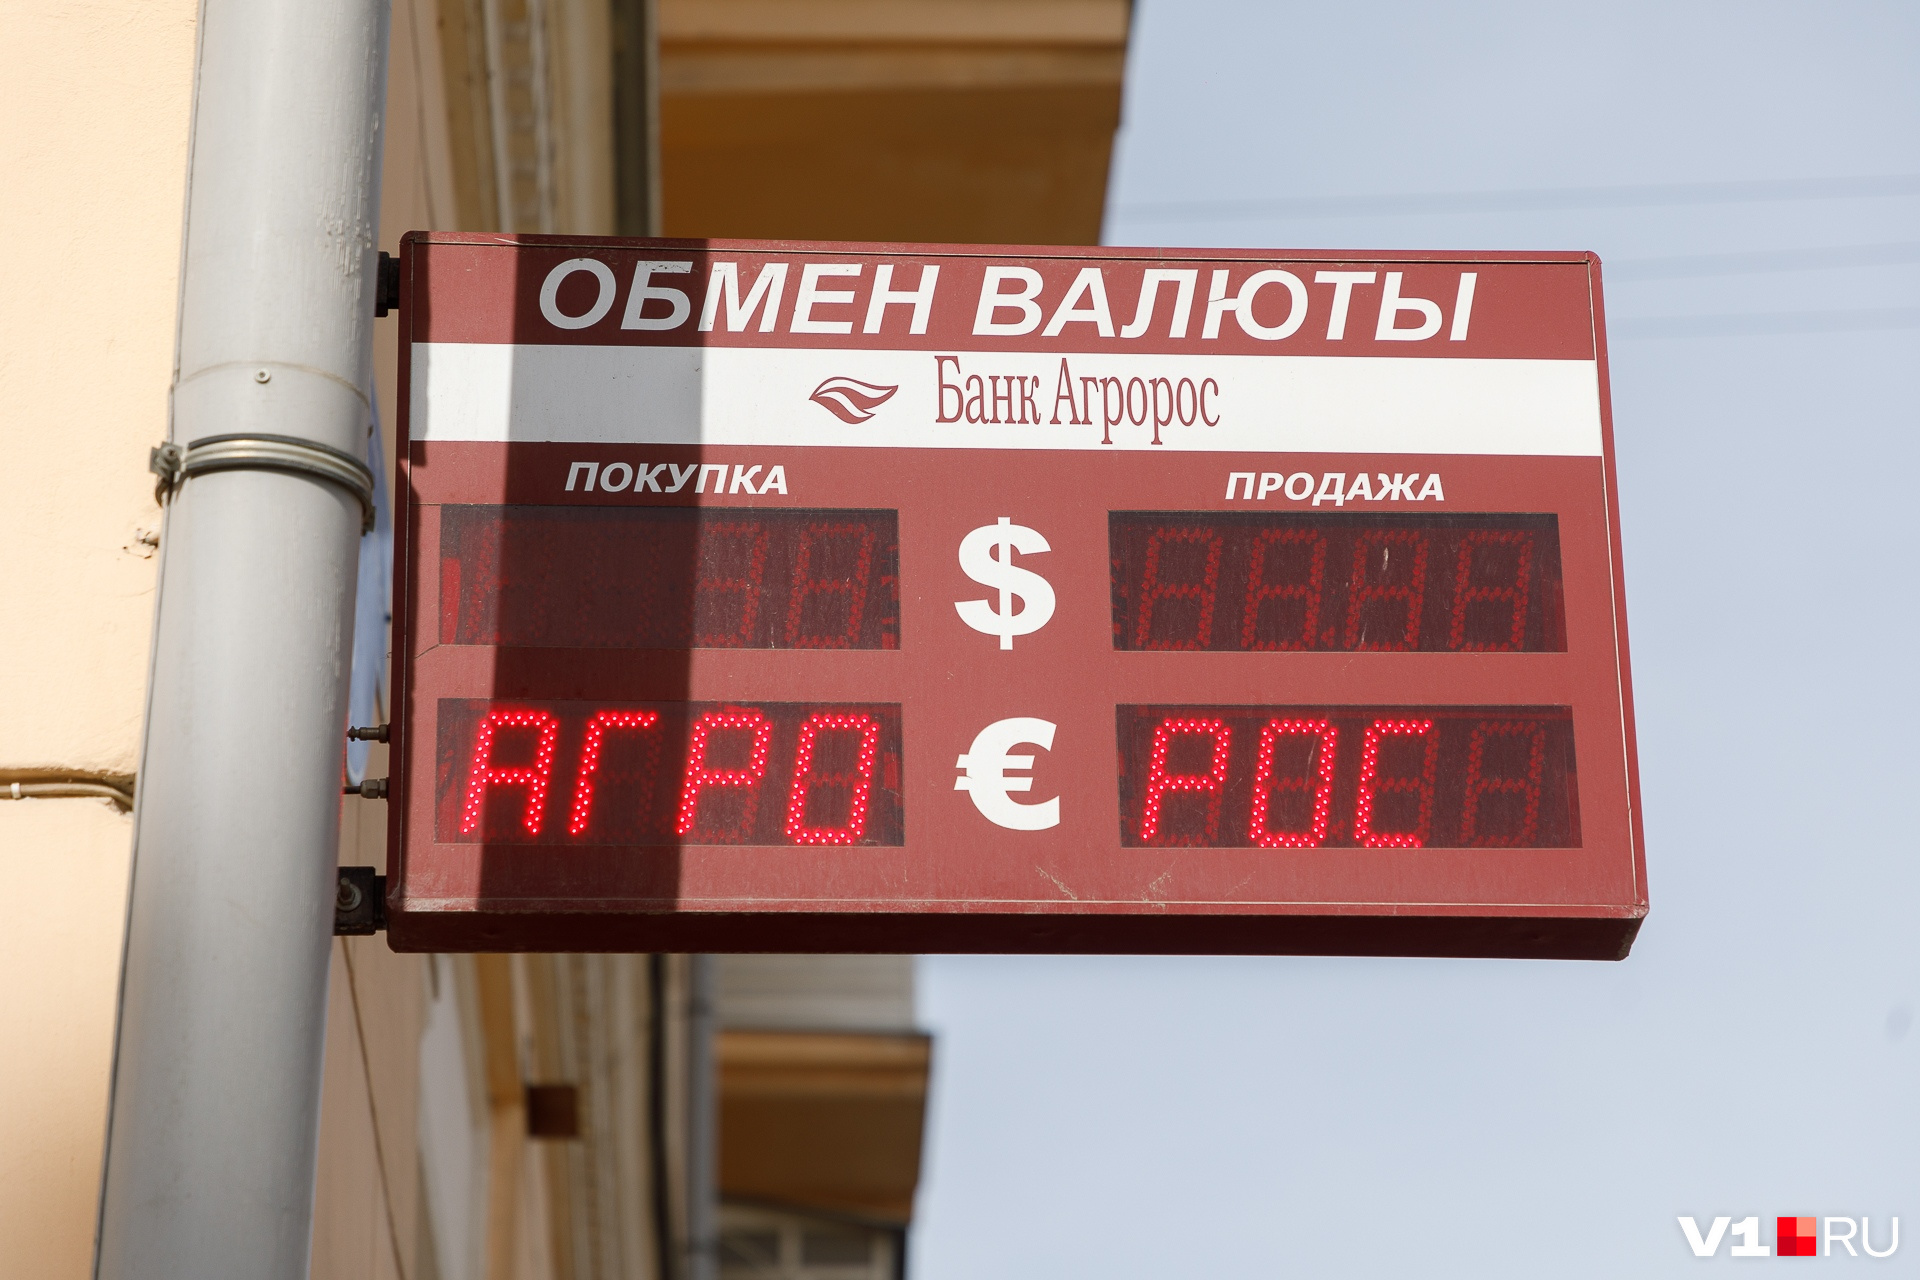 как поменять валюту в стиме с гривен на рубли фото 88